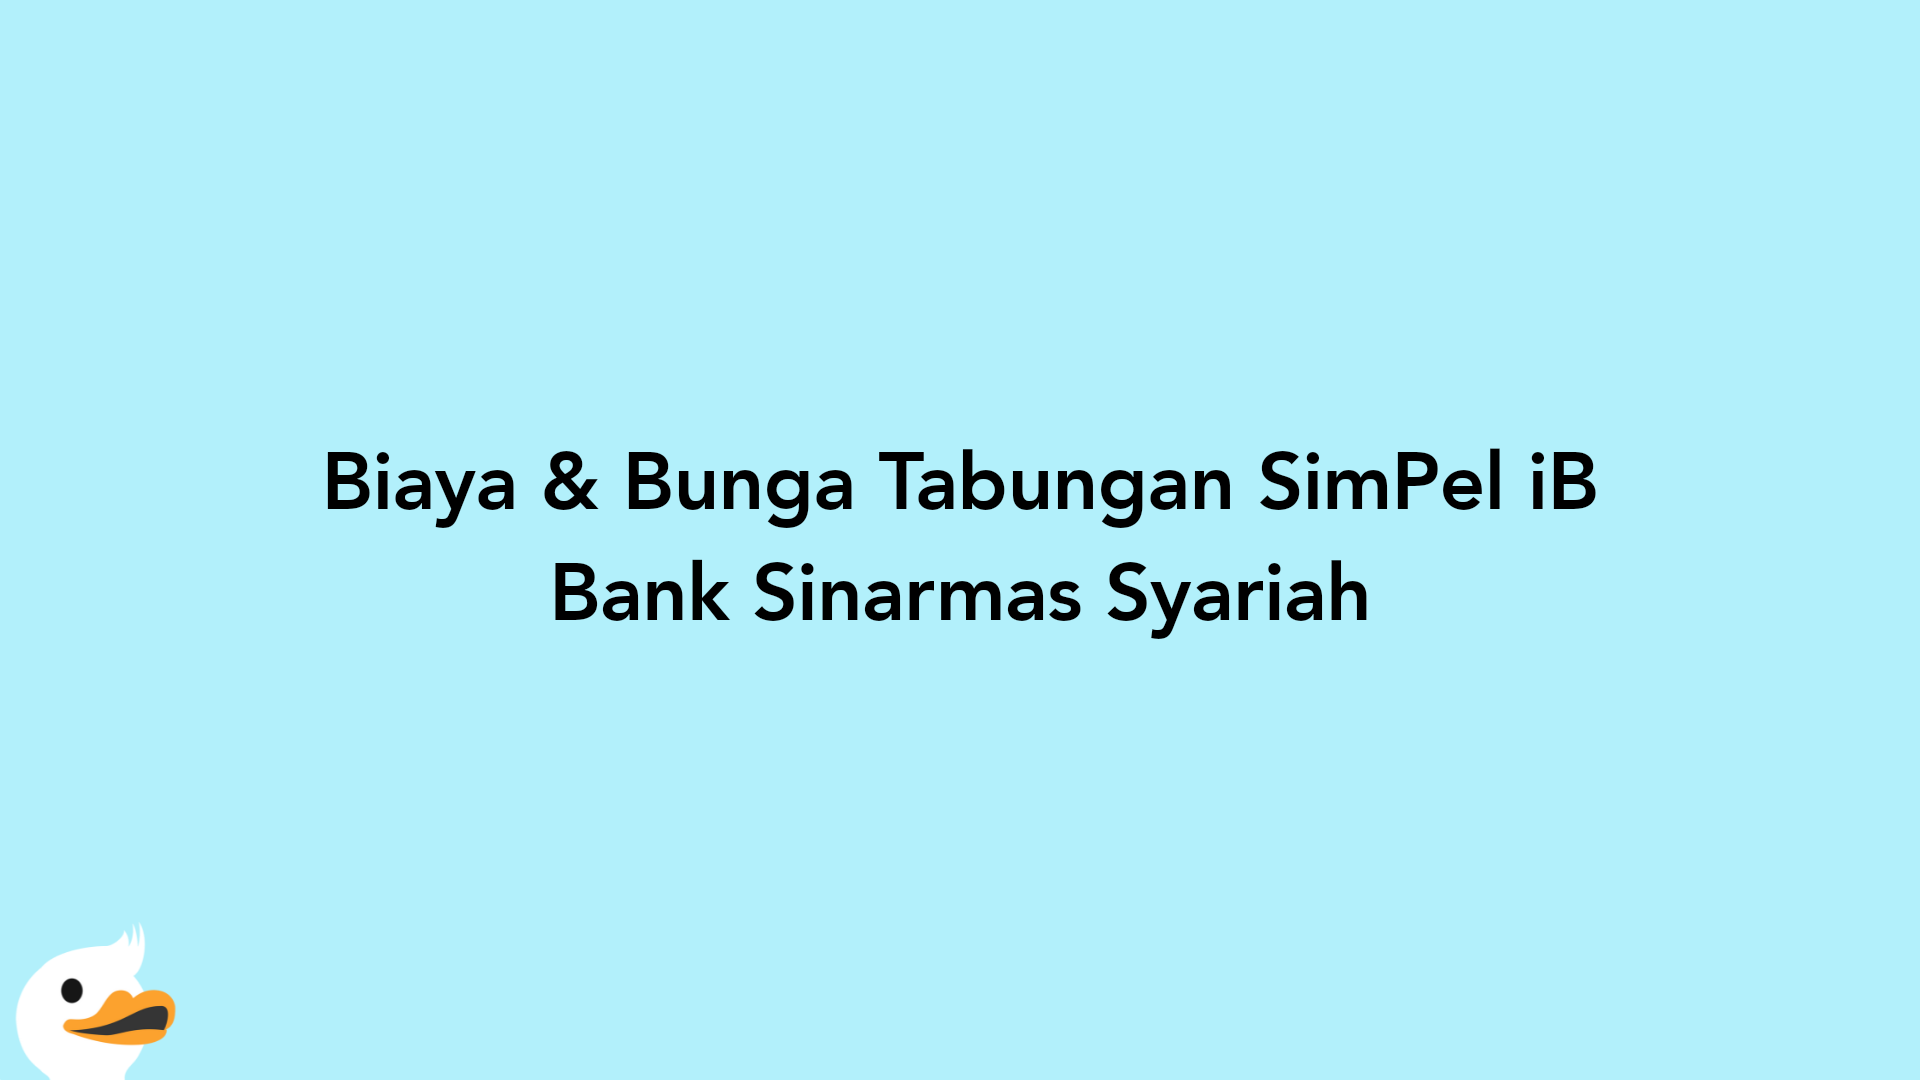 Biaya & Bunga Tabungan SimPel iB Bank Sinarmas Syariah